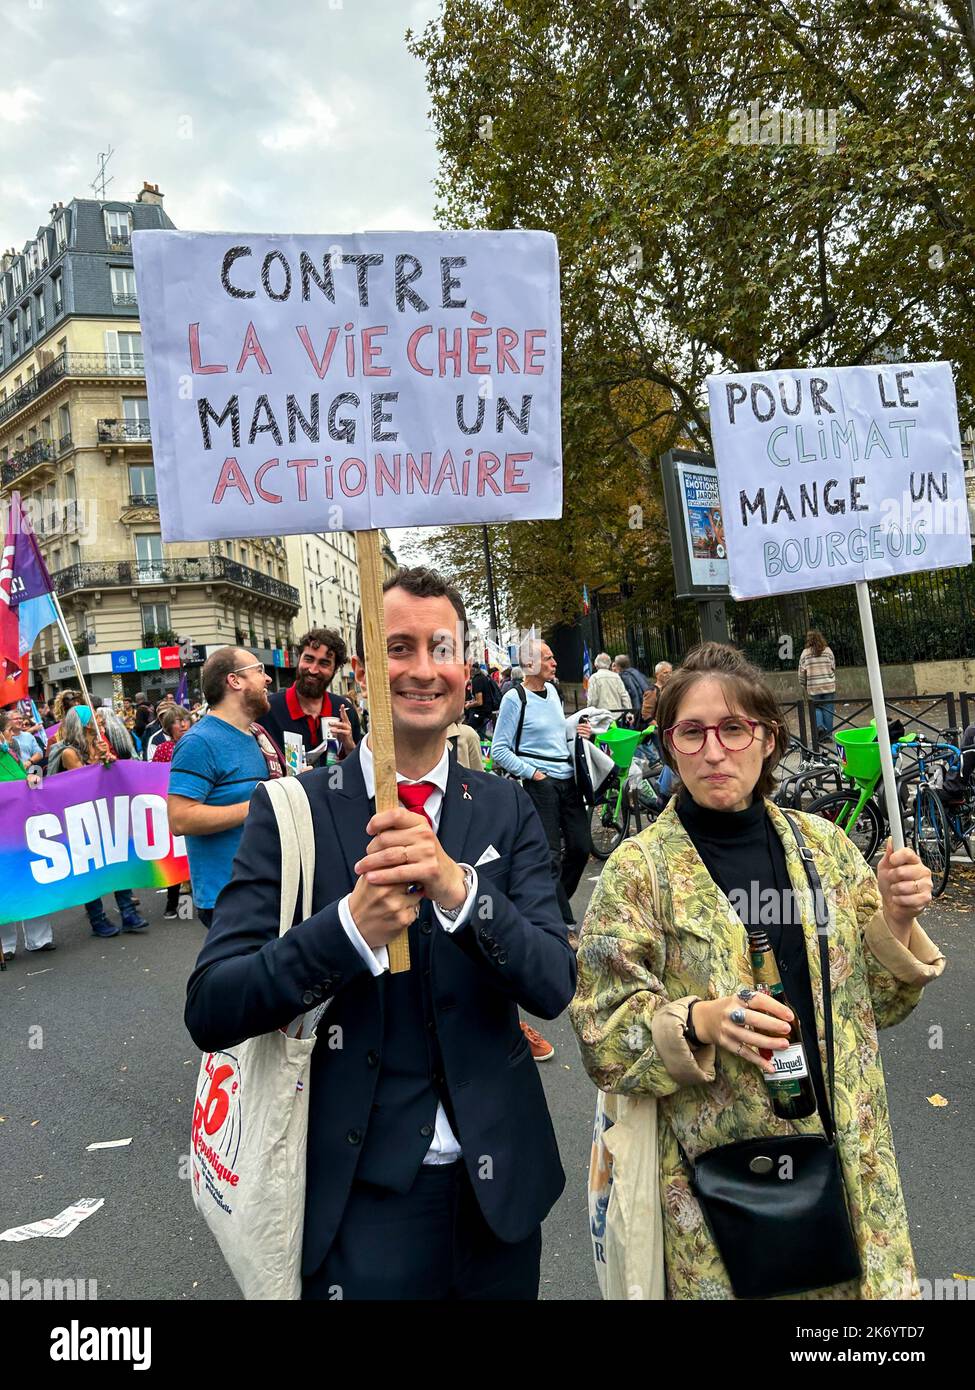 Paris, France, Parti politique français de gauche, NUPES, LFI, manifestation contre le coût de la vie et l'inaction sur le changement climatique, les gens tenant des panneaux de protestation amusants, debout et être comptés Banque D'Images